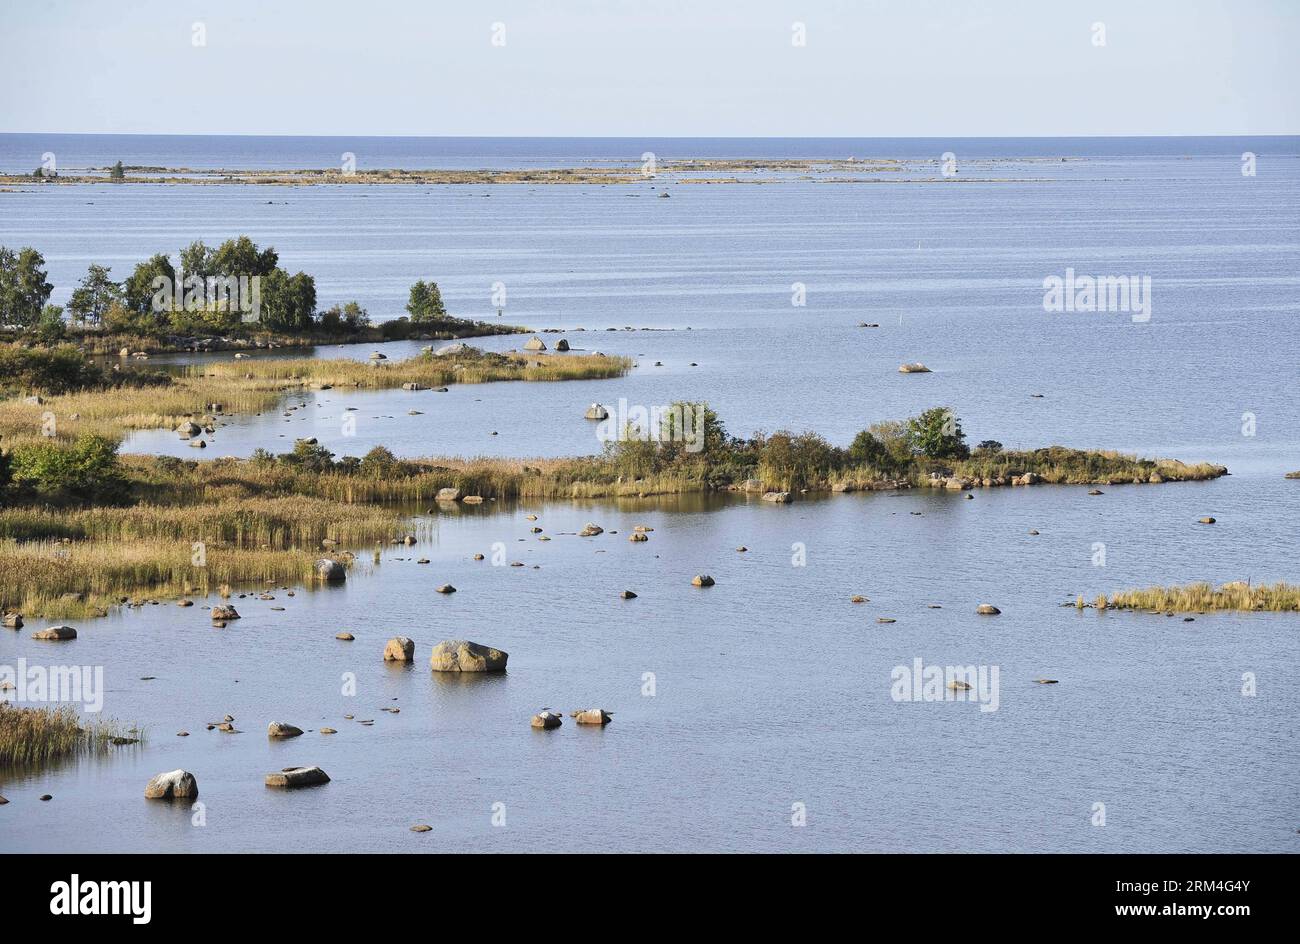 Bildnummer: 60455214 Datum: 10.09.2013 Copyright: imago/Xinhua (130910) -- BRÜSSEL, 10. September 2013 (Xinhua) -- Foto aufgenommen am 4. September 2013 zeigt den Blick auf den Kvarken-Archipel bei Svedjehamn, etwa 40 Kilometer nördlich von Vaasa, Finnland. Die 5.600 Inseln des Kvarken-Archipels, das einzige UNESCO-Weltnaturerbe Finnlands, weisen ungewöhnliche gewellte Waschbrettmoränen auf, ®de Geer Moraines¯, die durch das Schmelzen des kontinentalen Eisschildes vor 10.000 bis 24.000 Jahren entstanden sind. Der Archipel steigt kontinuierlich aus dem Meer in einem Prozess des schnellen glazioisostatischen Auftriebs, wobei Stockfoto